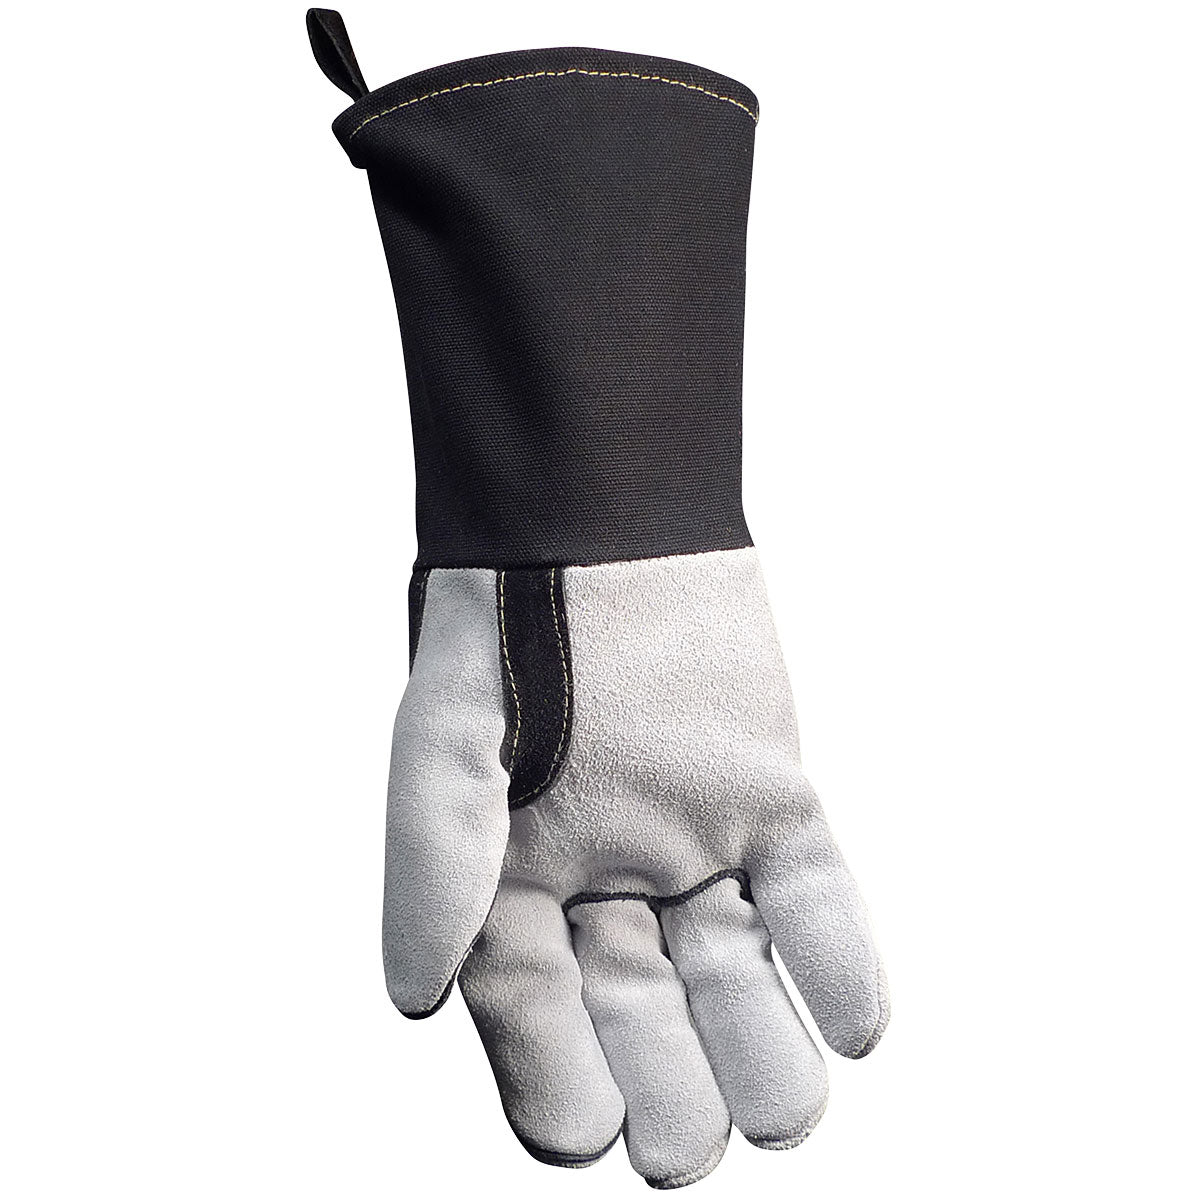 Caiman® Premium Split Cowhide MIG/Stick Welder's Glove with FR Cotton Cuff